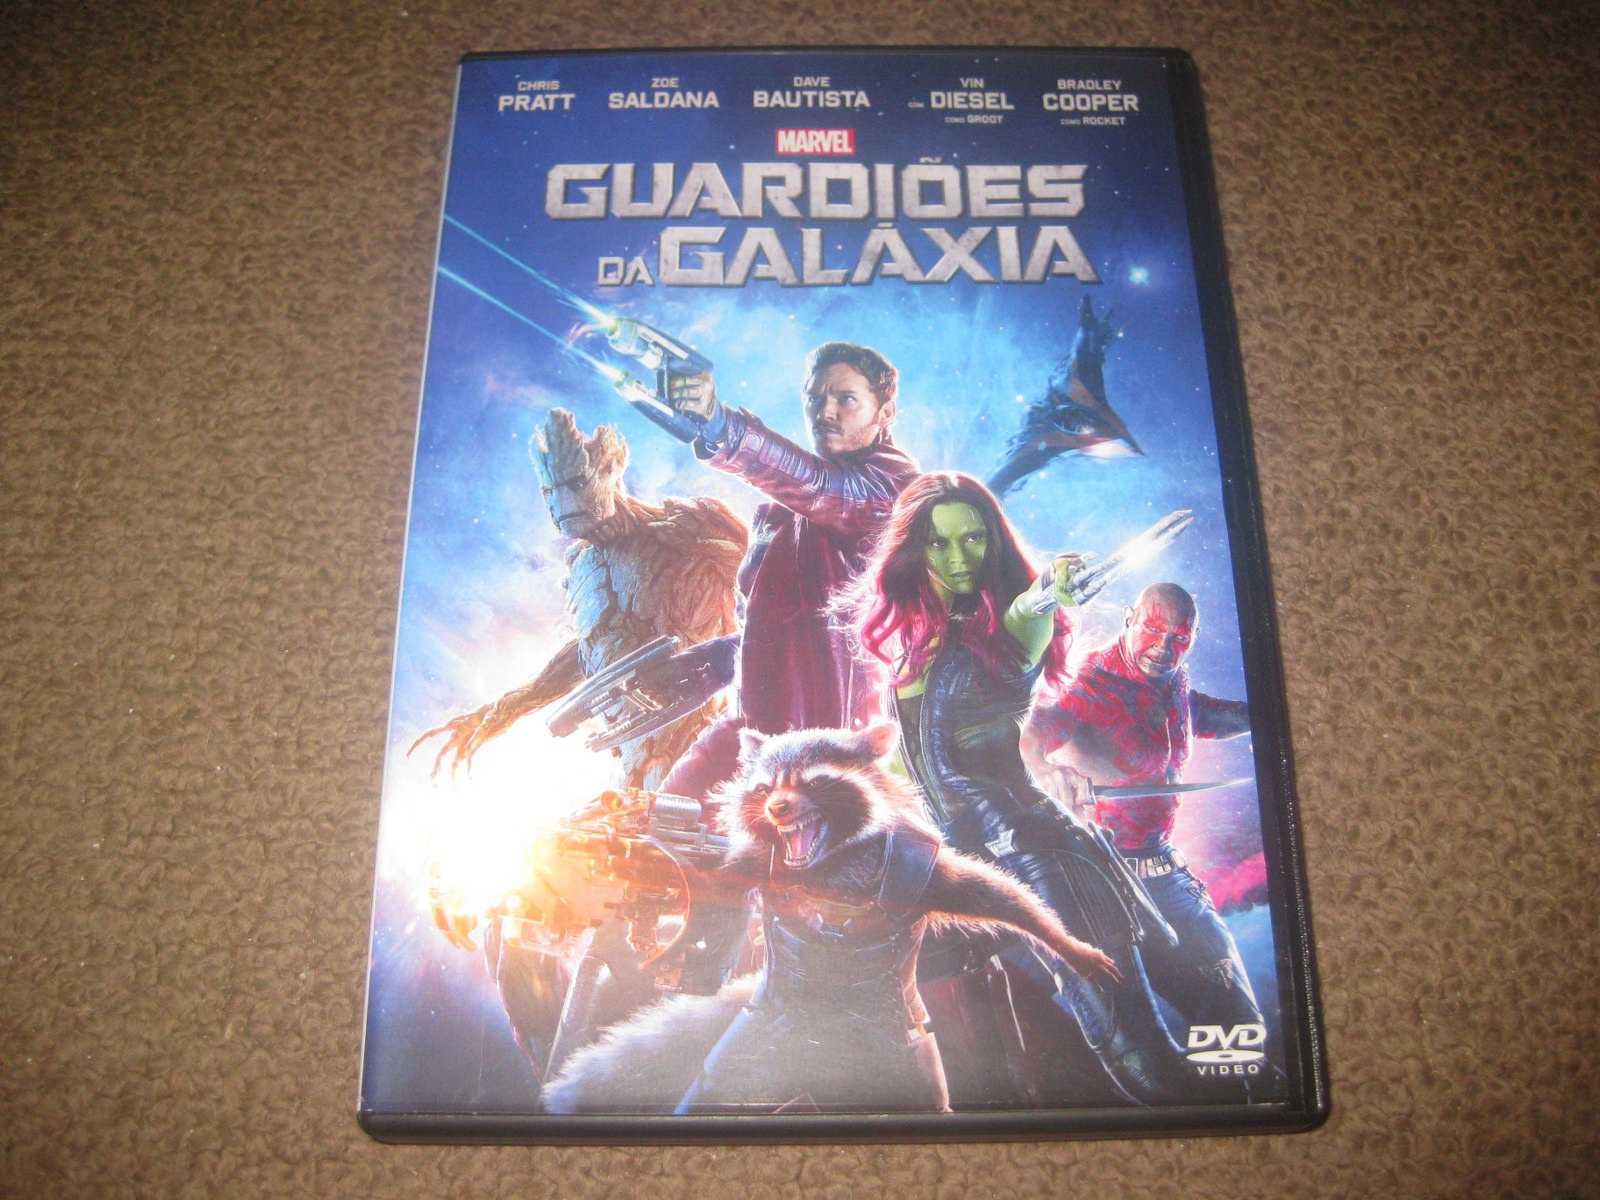 DVD "Guardiões da Galáxia" com Chris Pratt